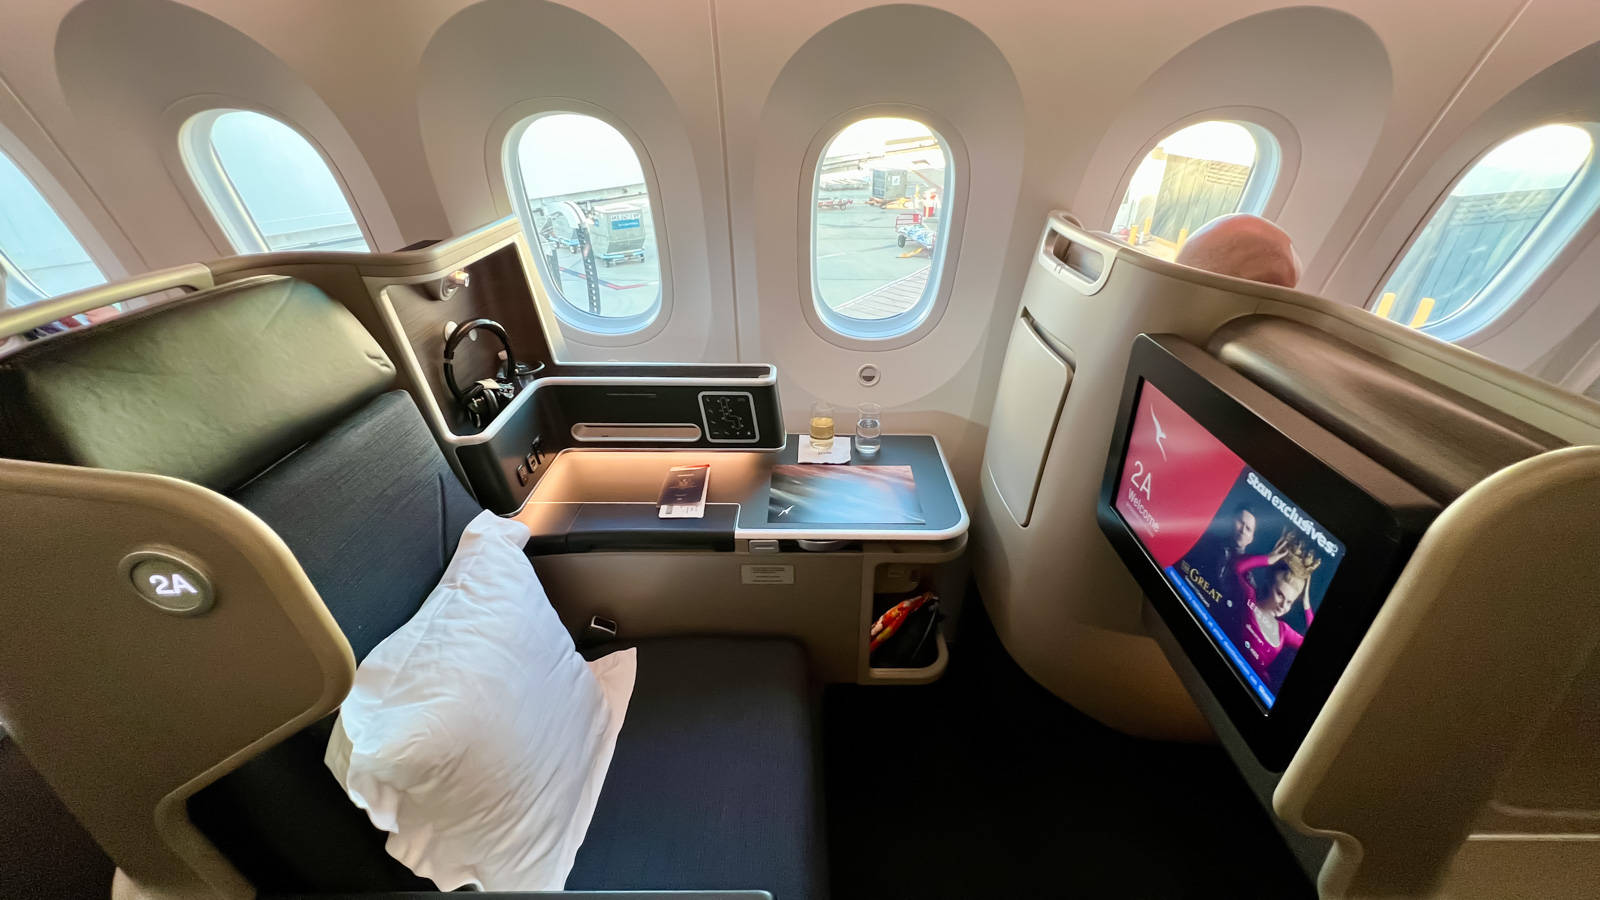 Qantasairways A380 Förstaklassäte - Qantas Airways A380 First Class Seat. Wallpaper